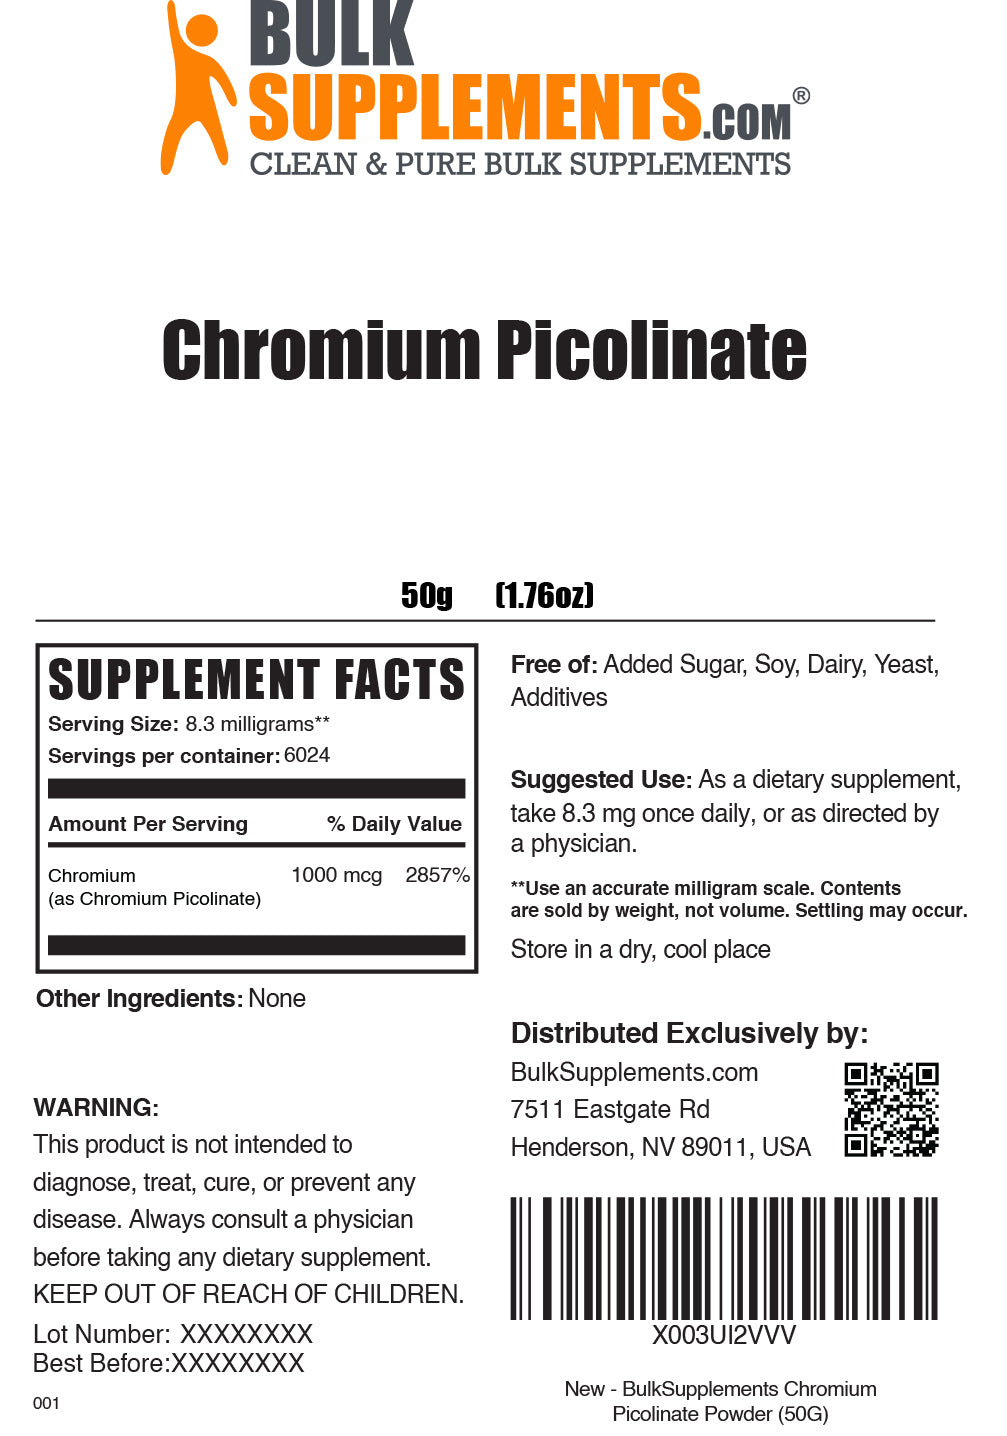 50g of Chromium Picolinate Supplement Facts